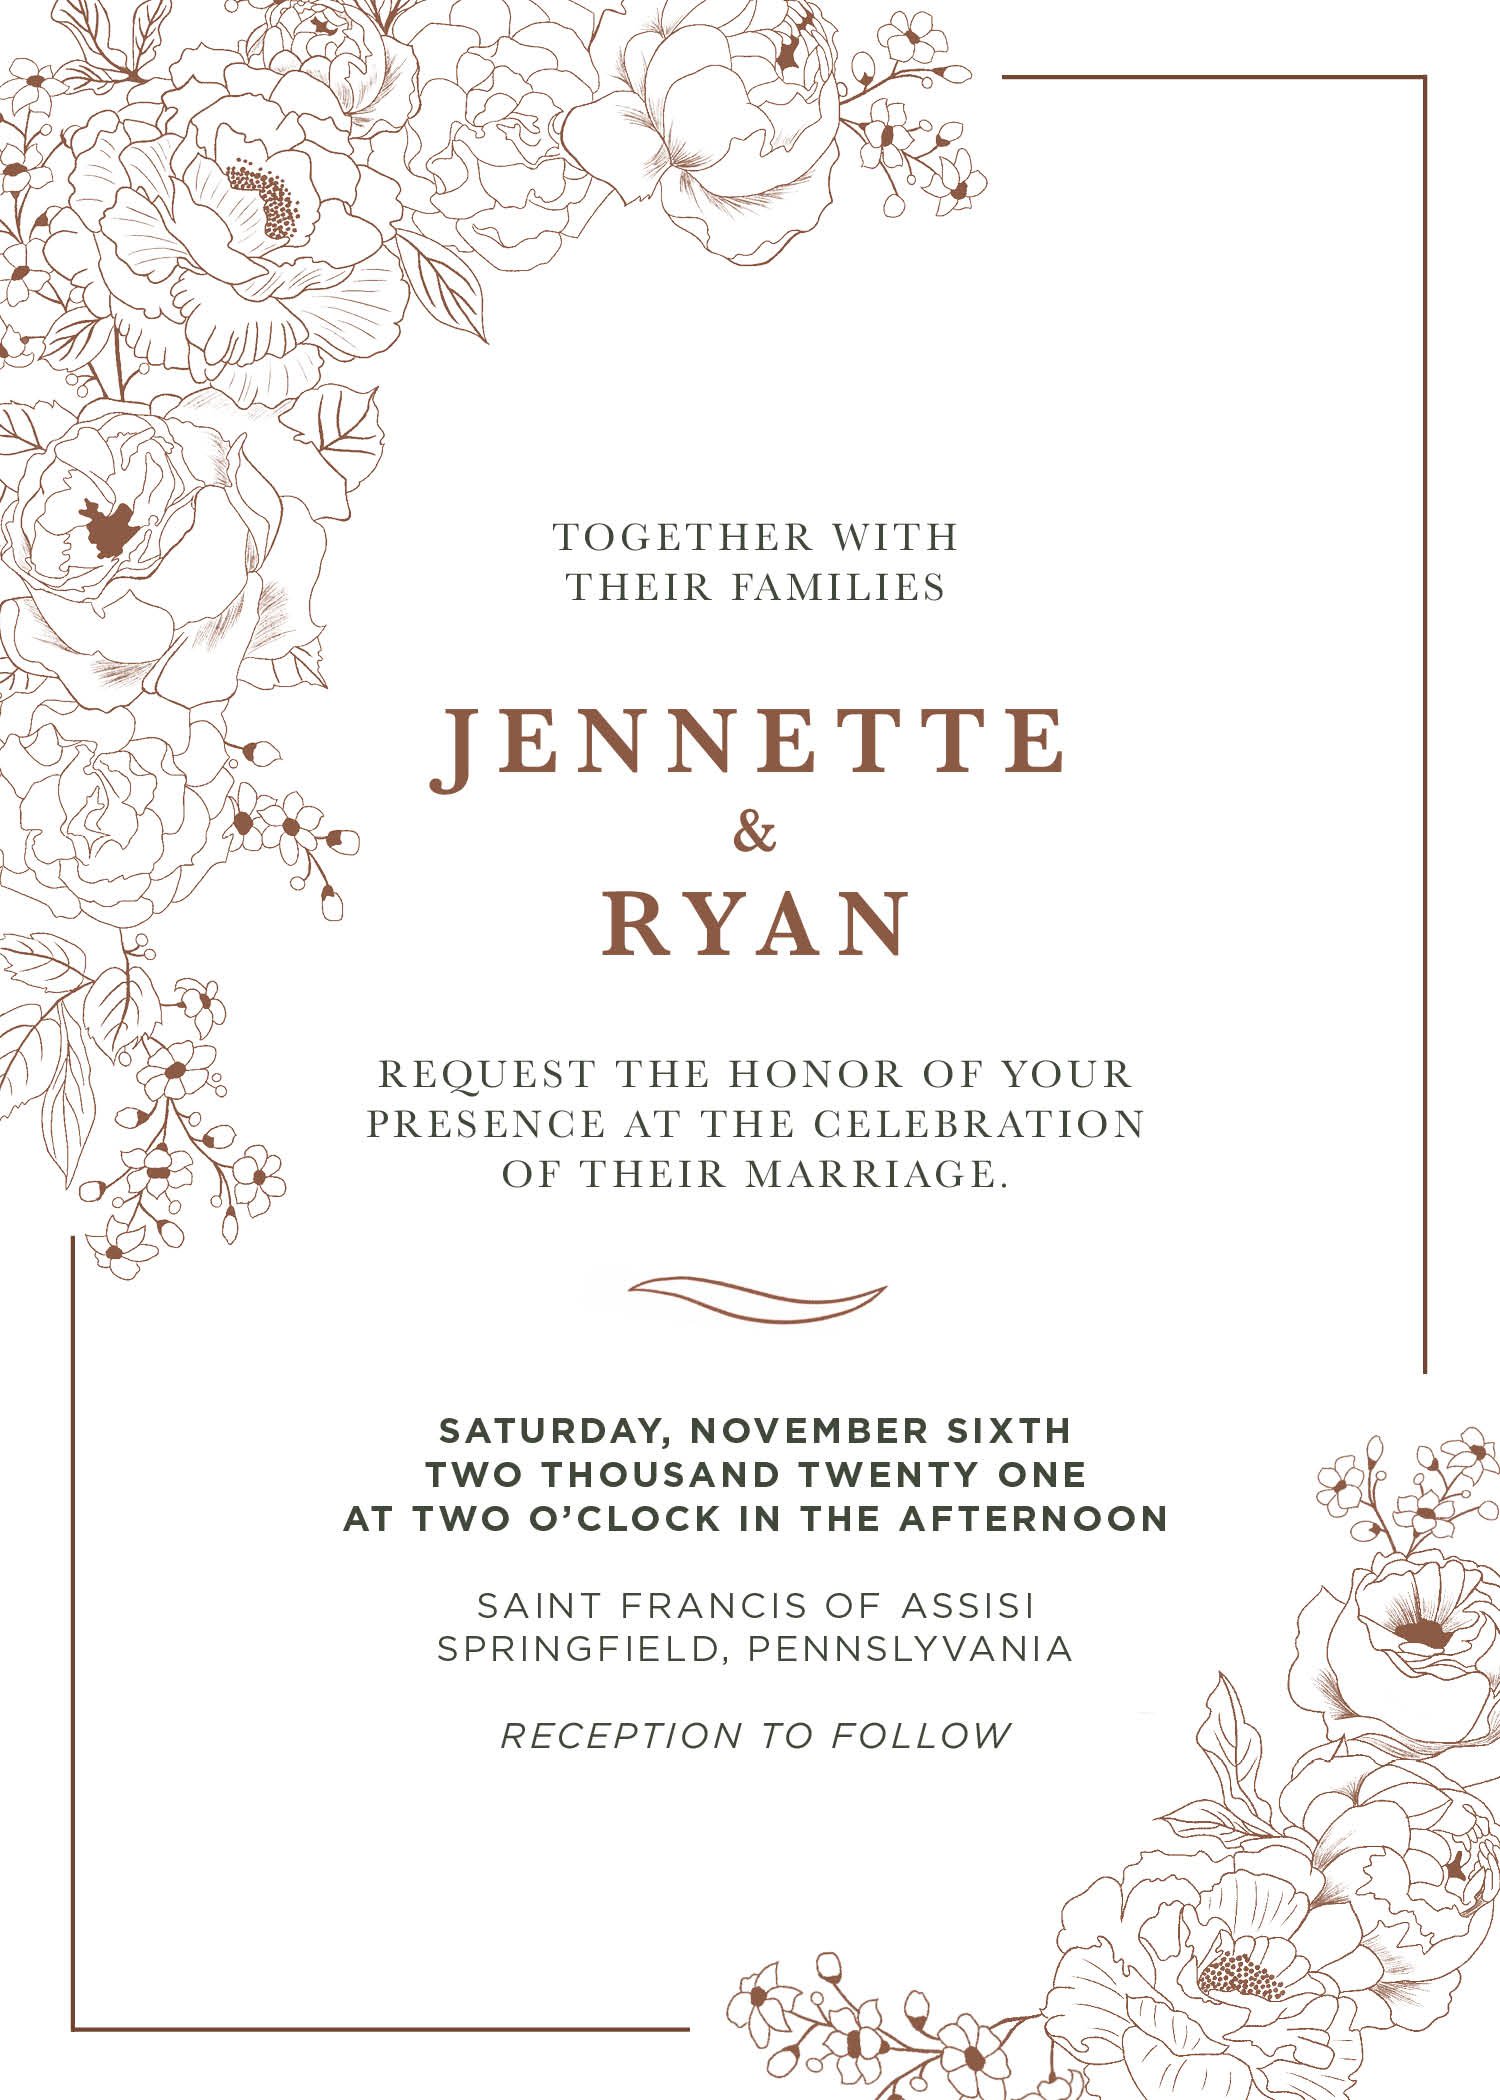 JENNETTE_RYAN_WEDDING INVITES_2021_FINAL.jpg